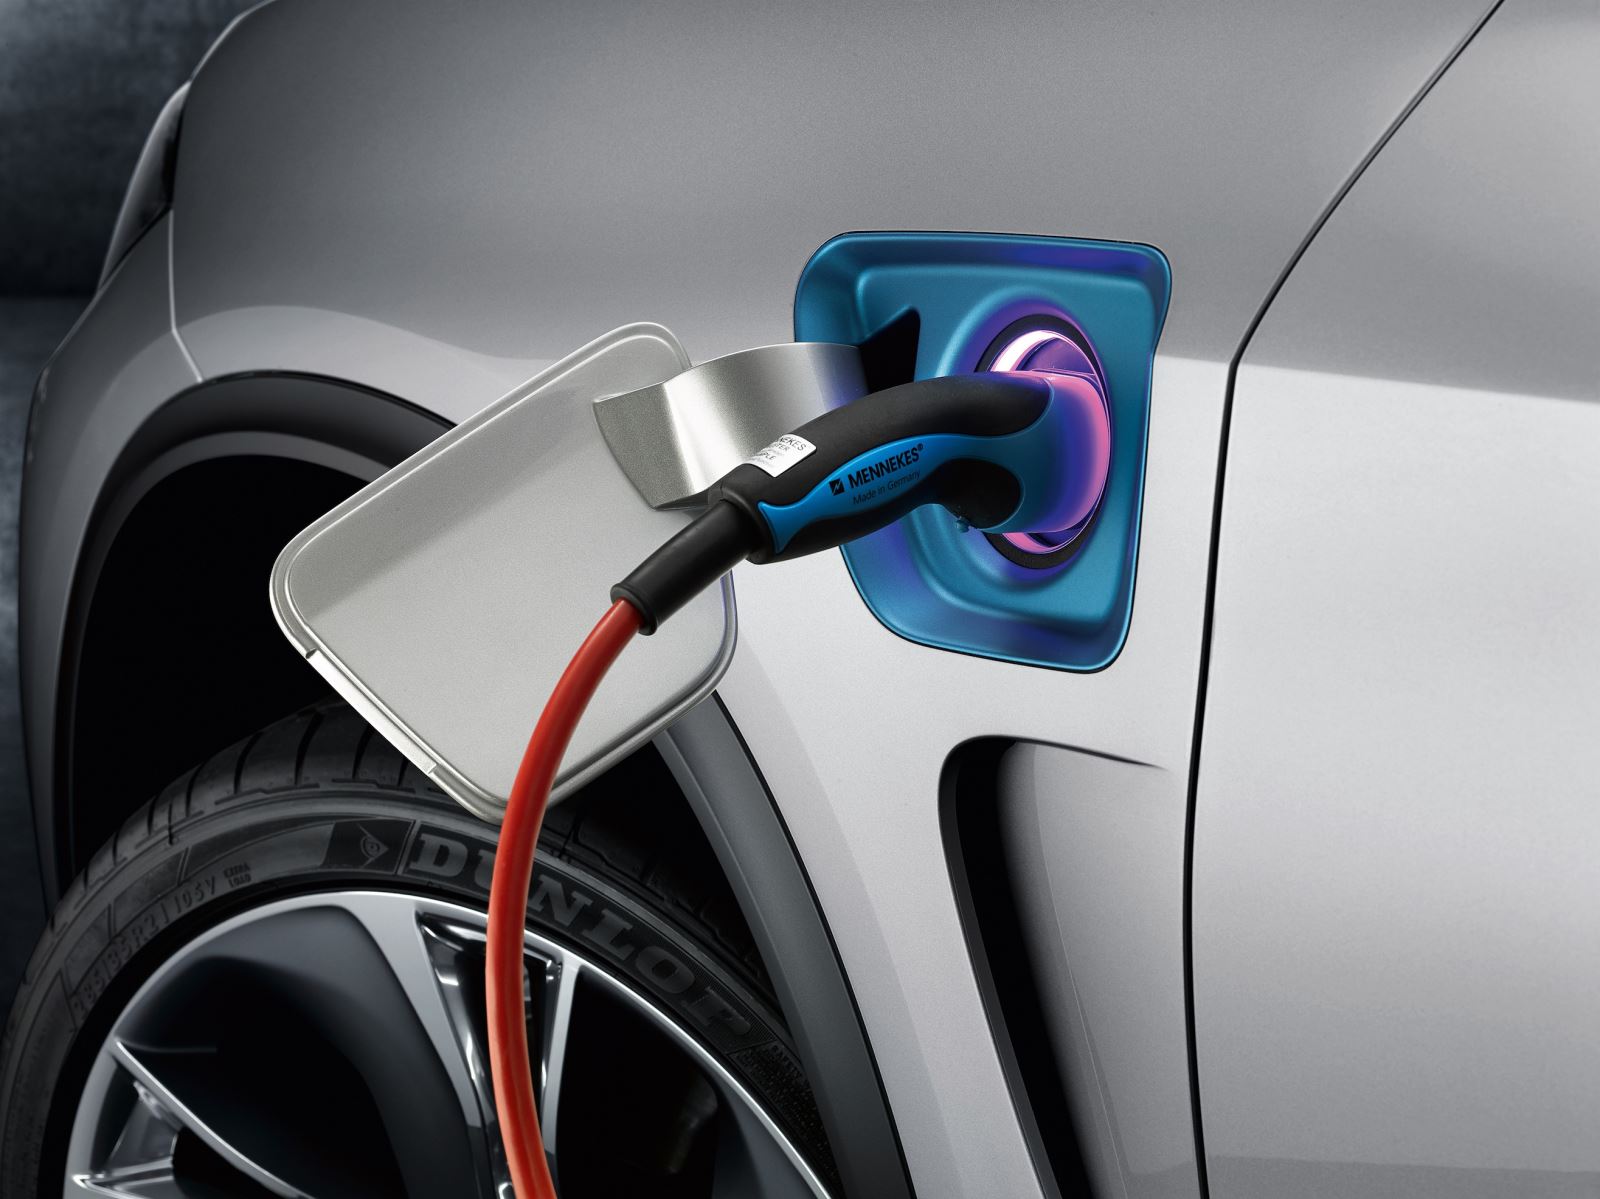 2027年插电式电动汽车充电设备市场年收益达360亿美元